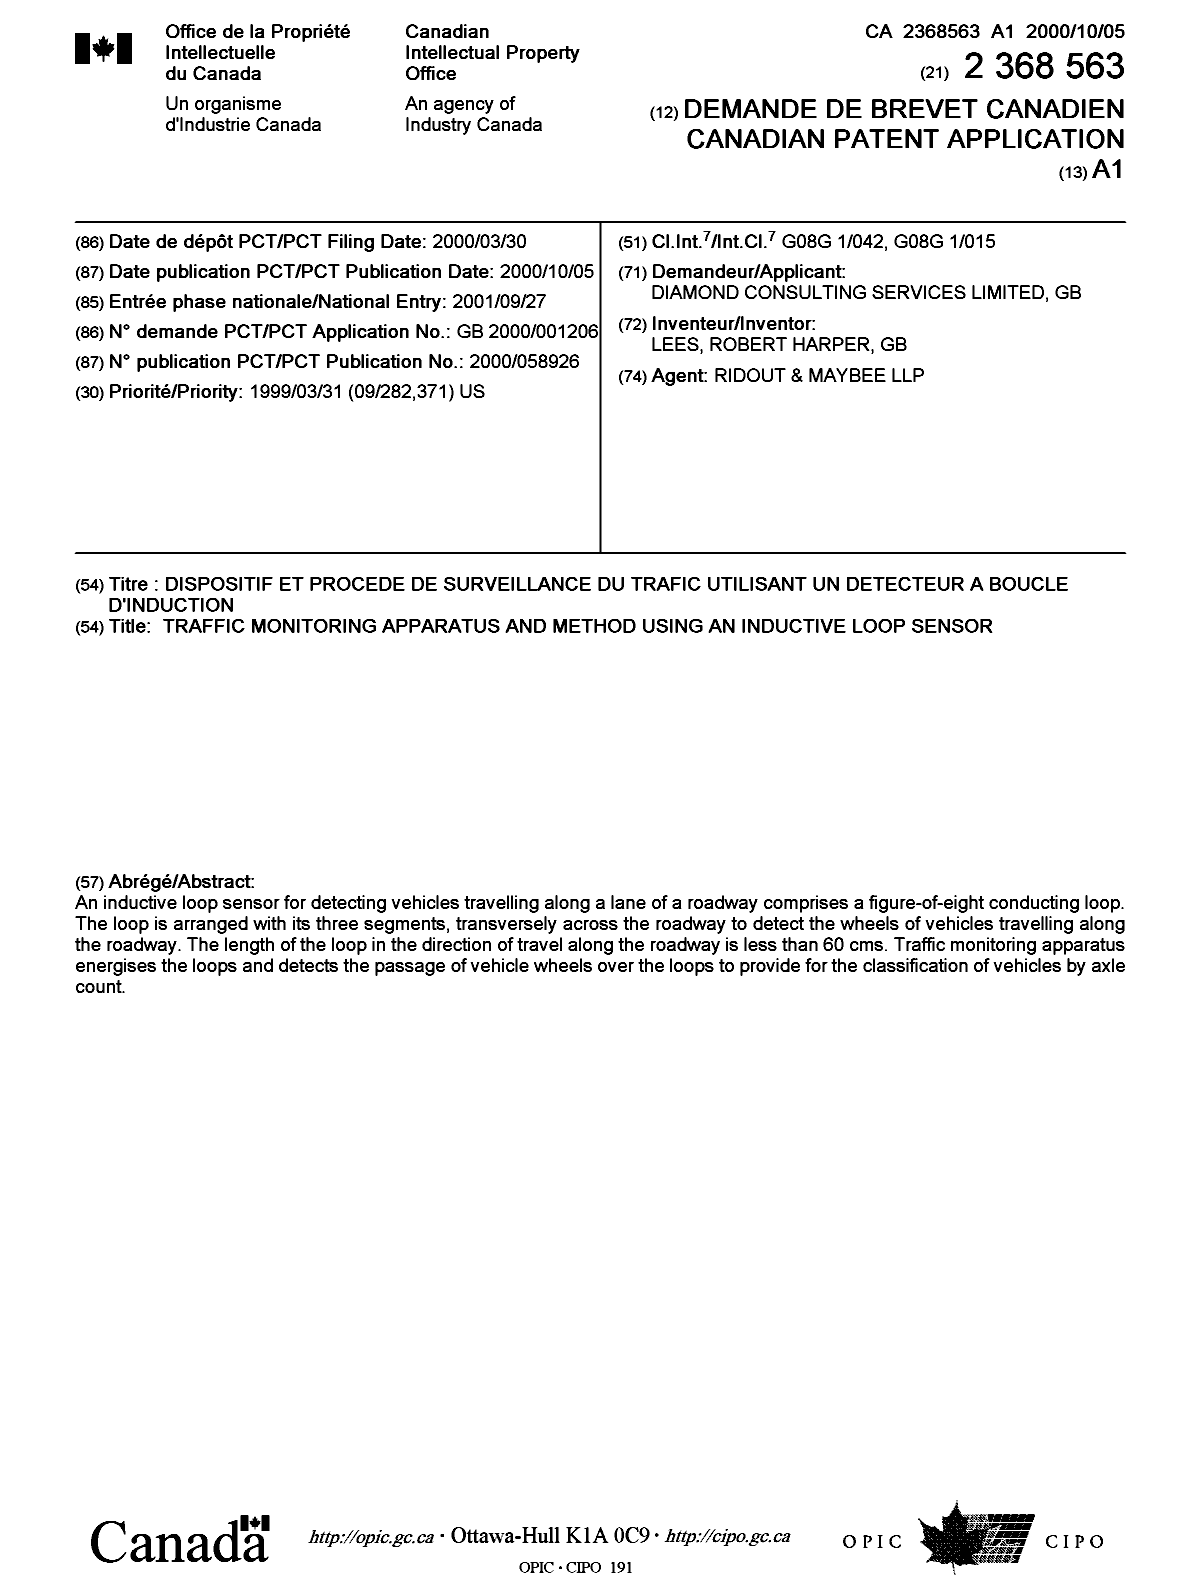 Document de brevet canadien 2368563. Page couverture 20020312. Image 1 de 1